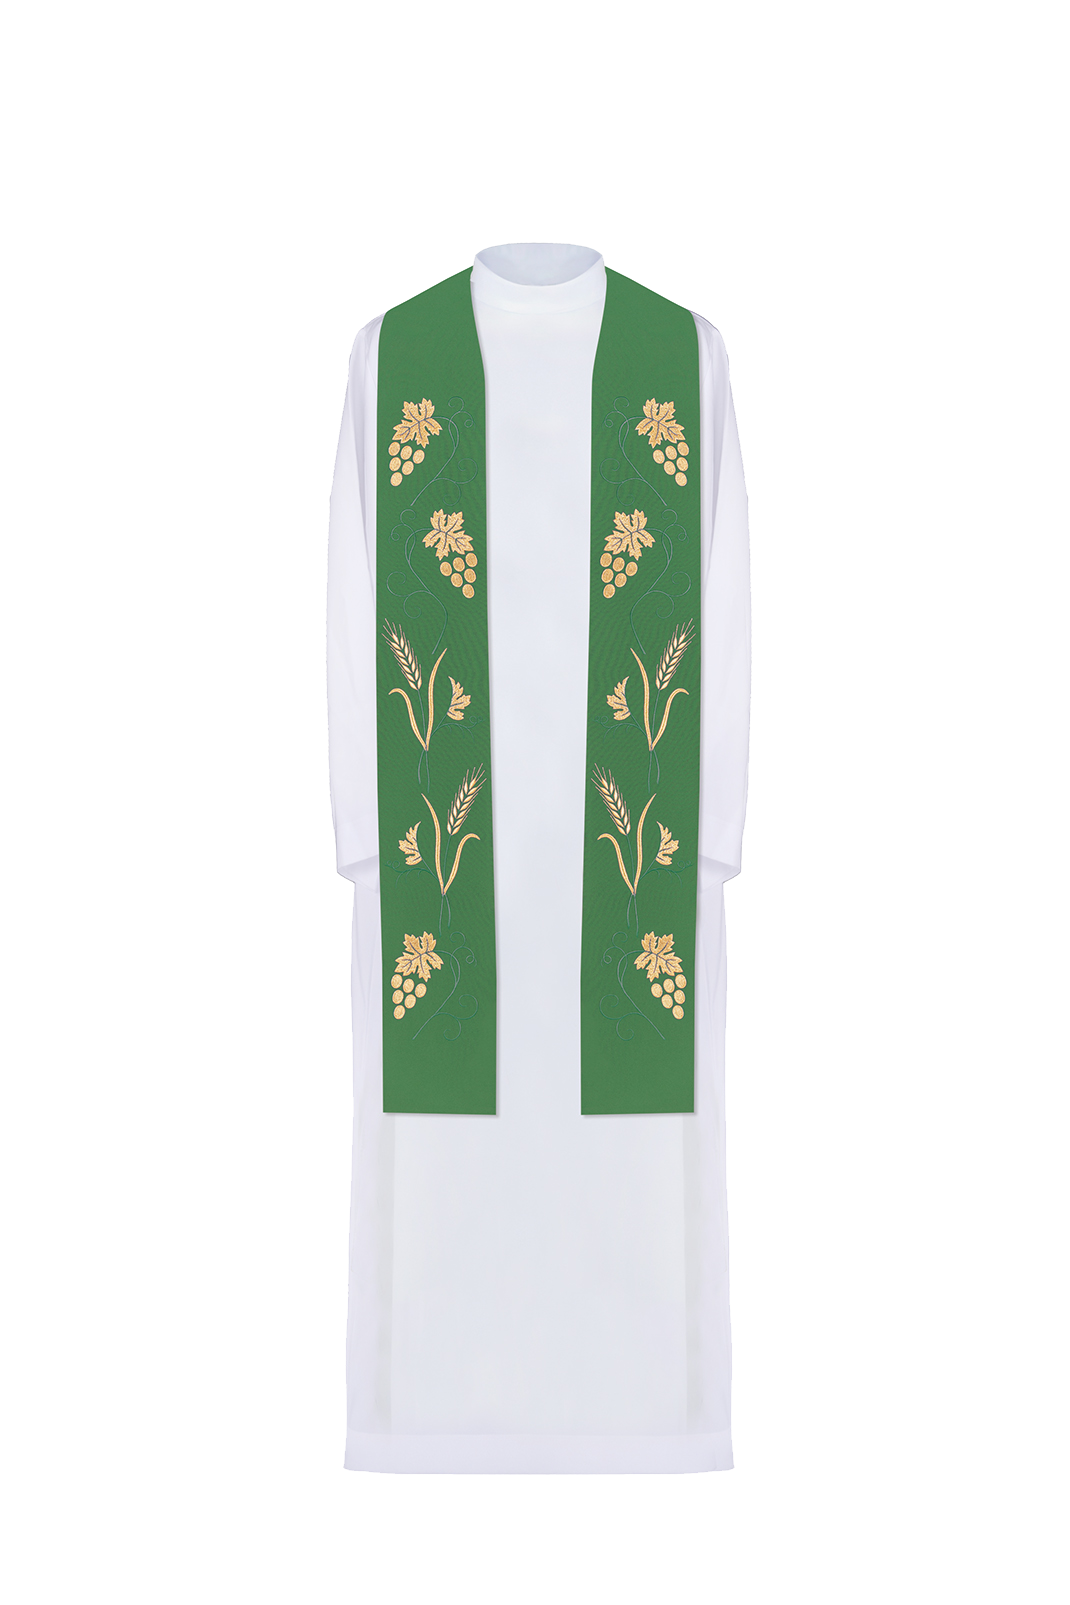 Zielona stuła kapłańska z bogatym haftem w winogrona i kłosy